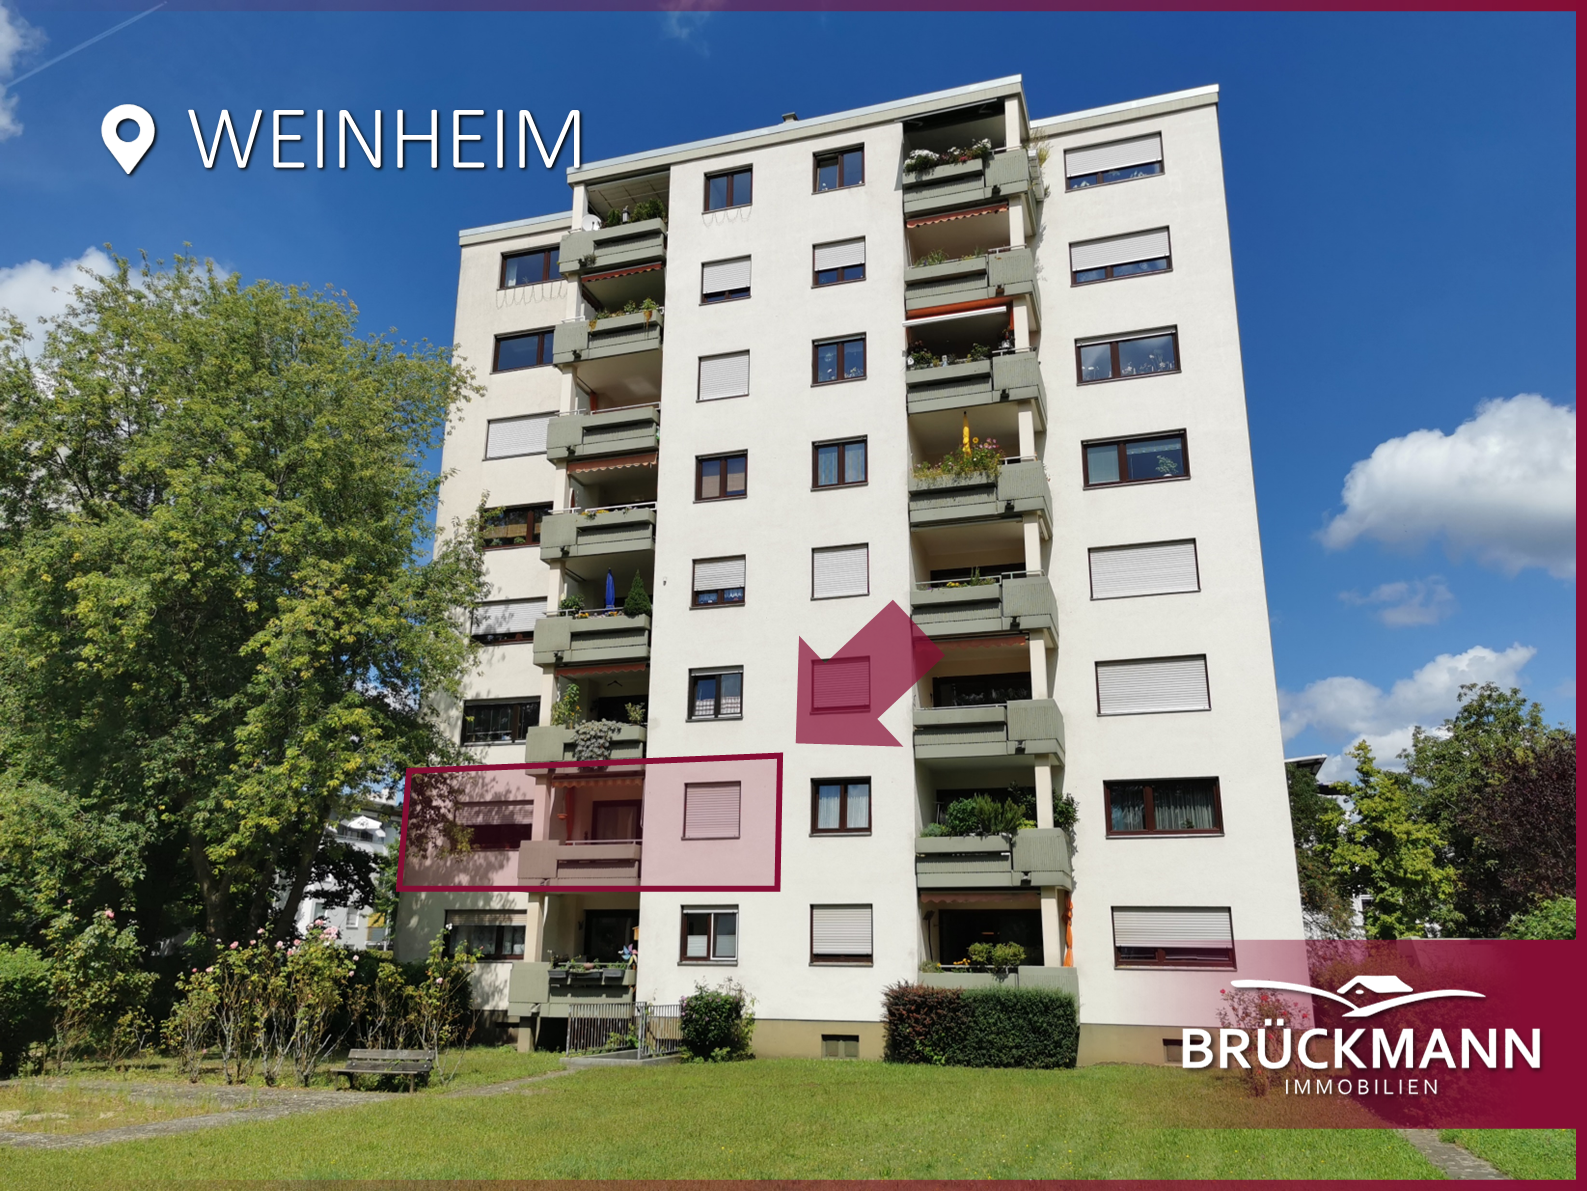 Große 4-ZKB Etagenwohnung mit 2 Balkonen, TG-Stellplatz und Aufzug in attraktiver Wohnlage!, 69469 Weinheim, Etagenwohnung